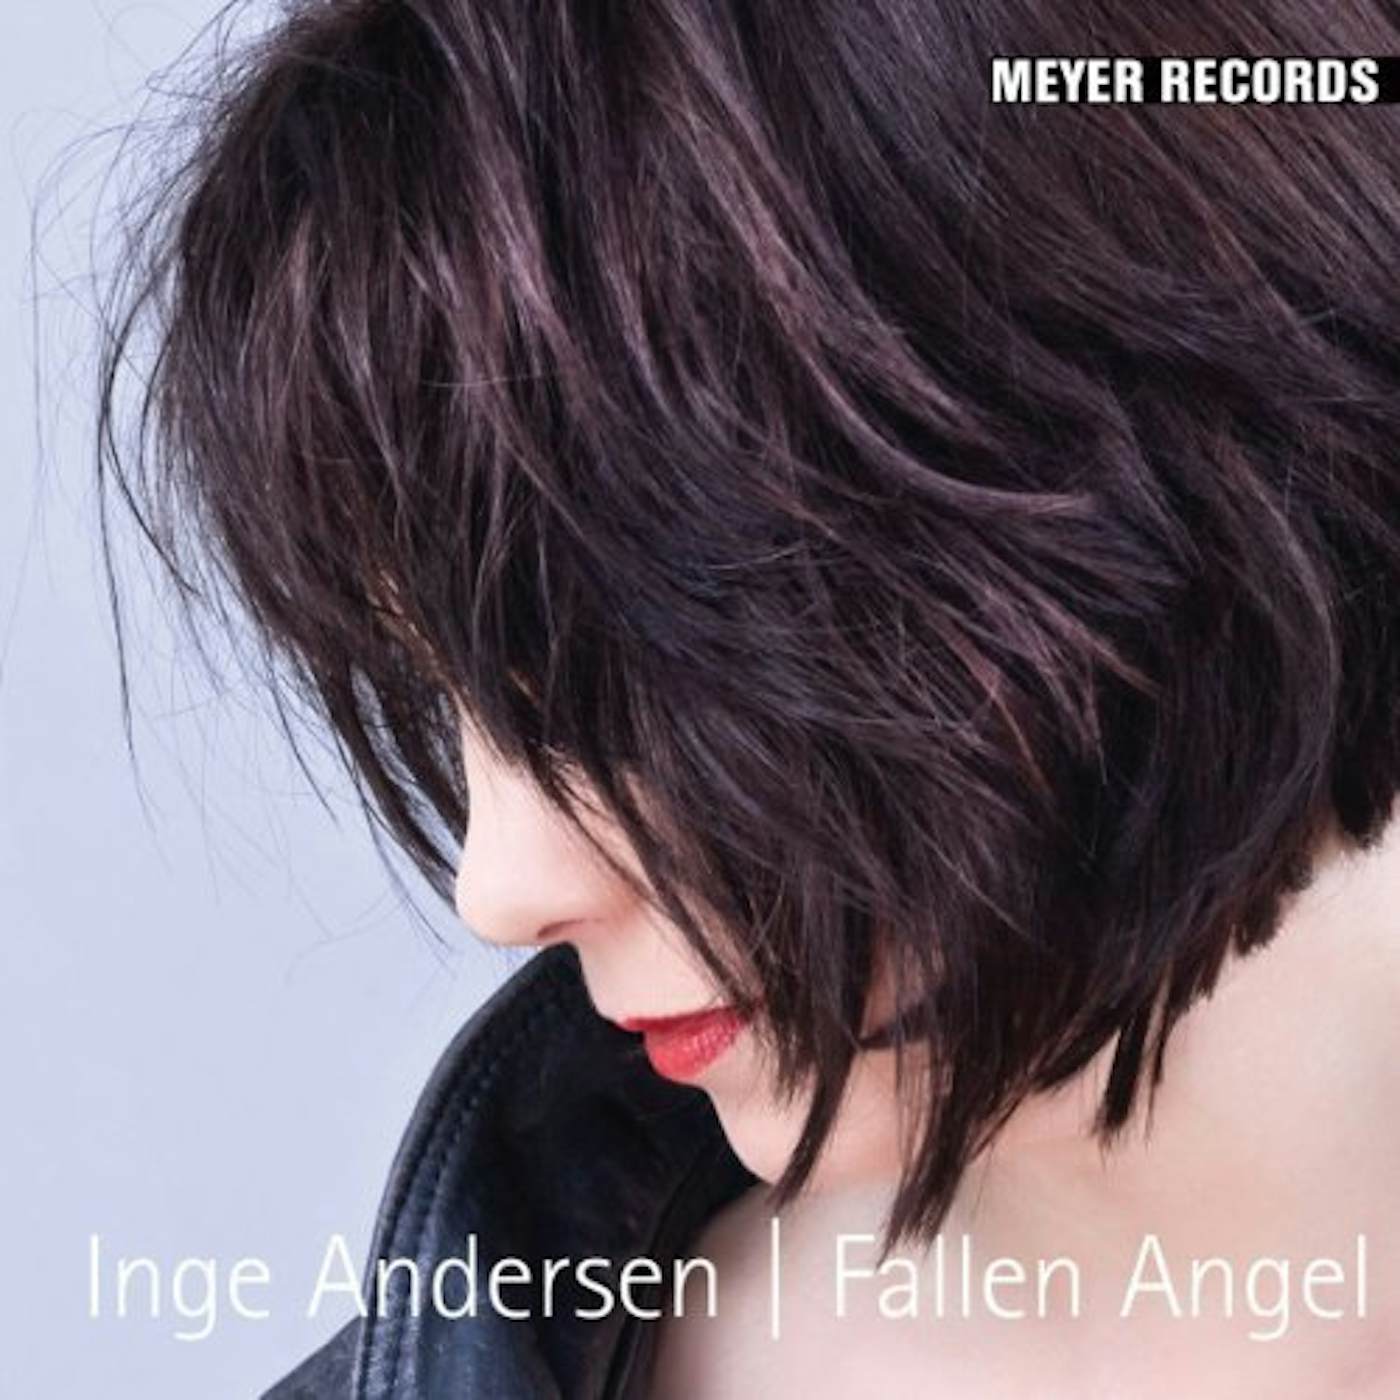 Inge Andersen Fallen Angel Vinyl Record